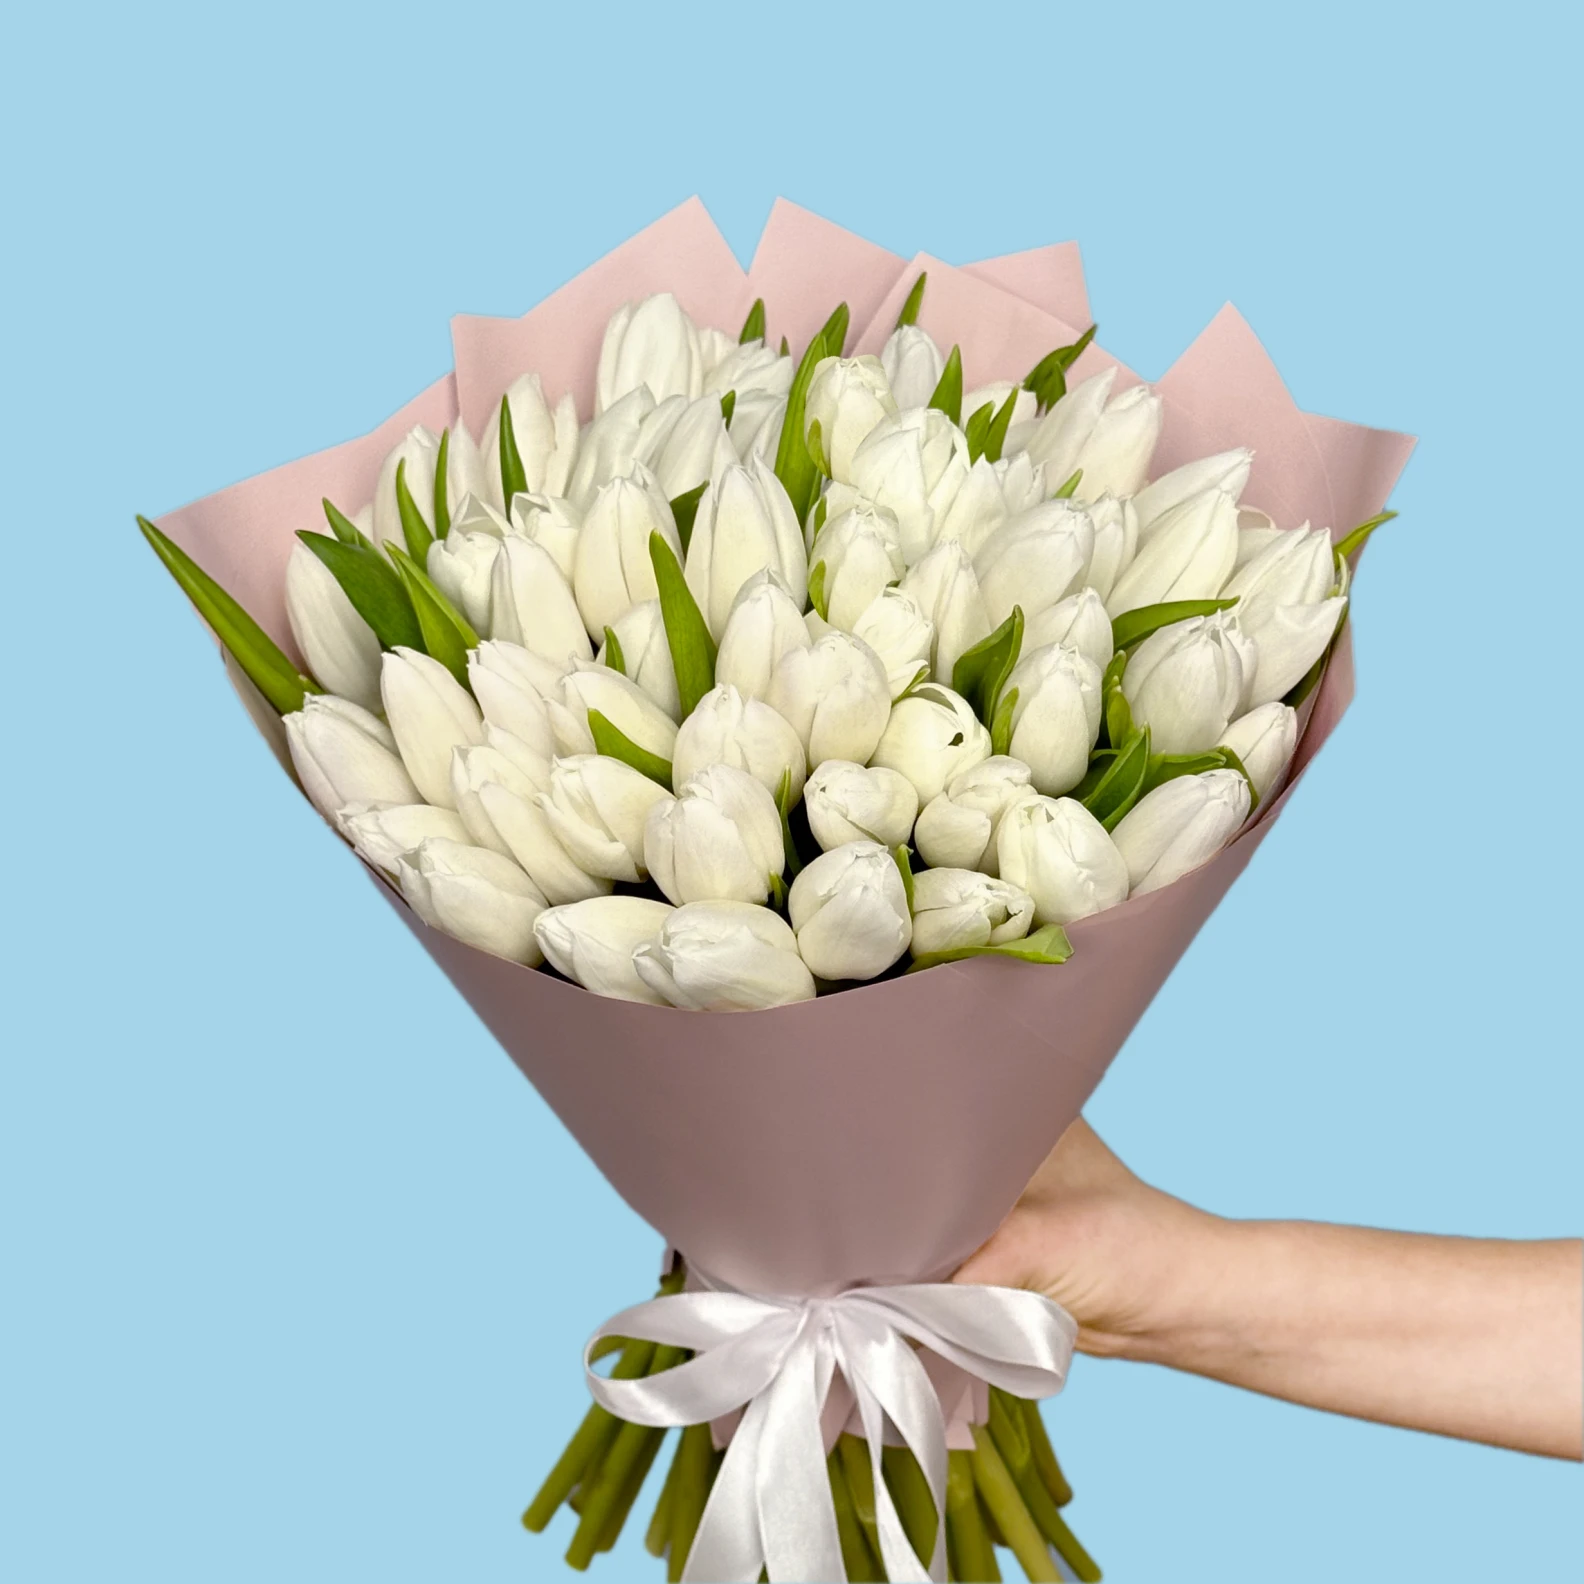 70 White Tulips - image №2